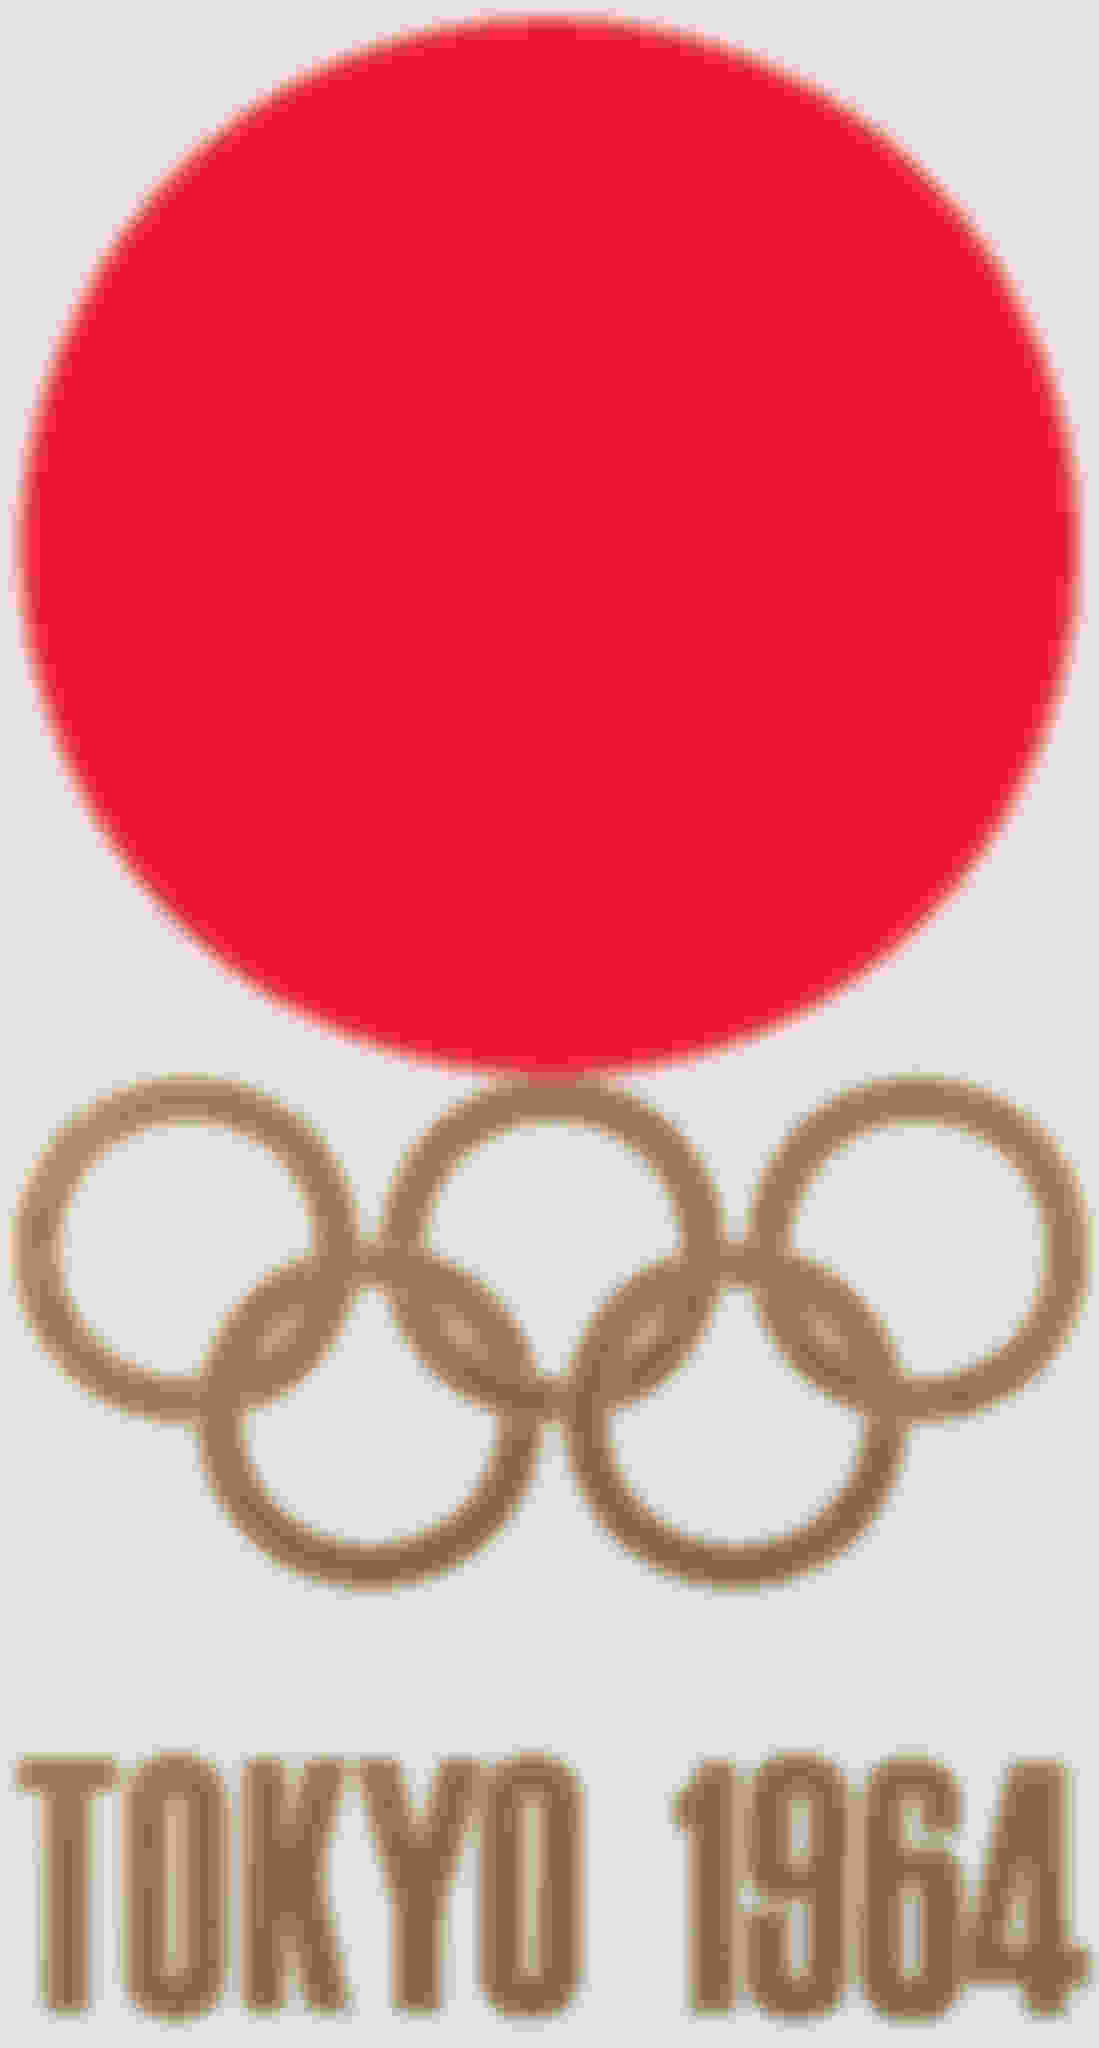 東京1964オリンピックロゴ、ポスター＆大会ルック